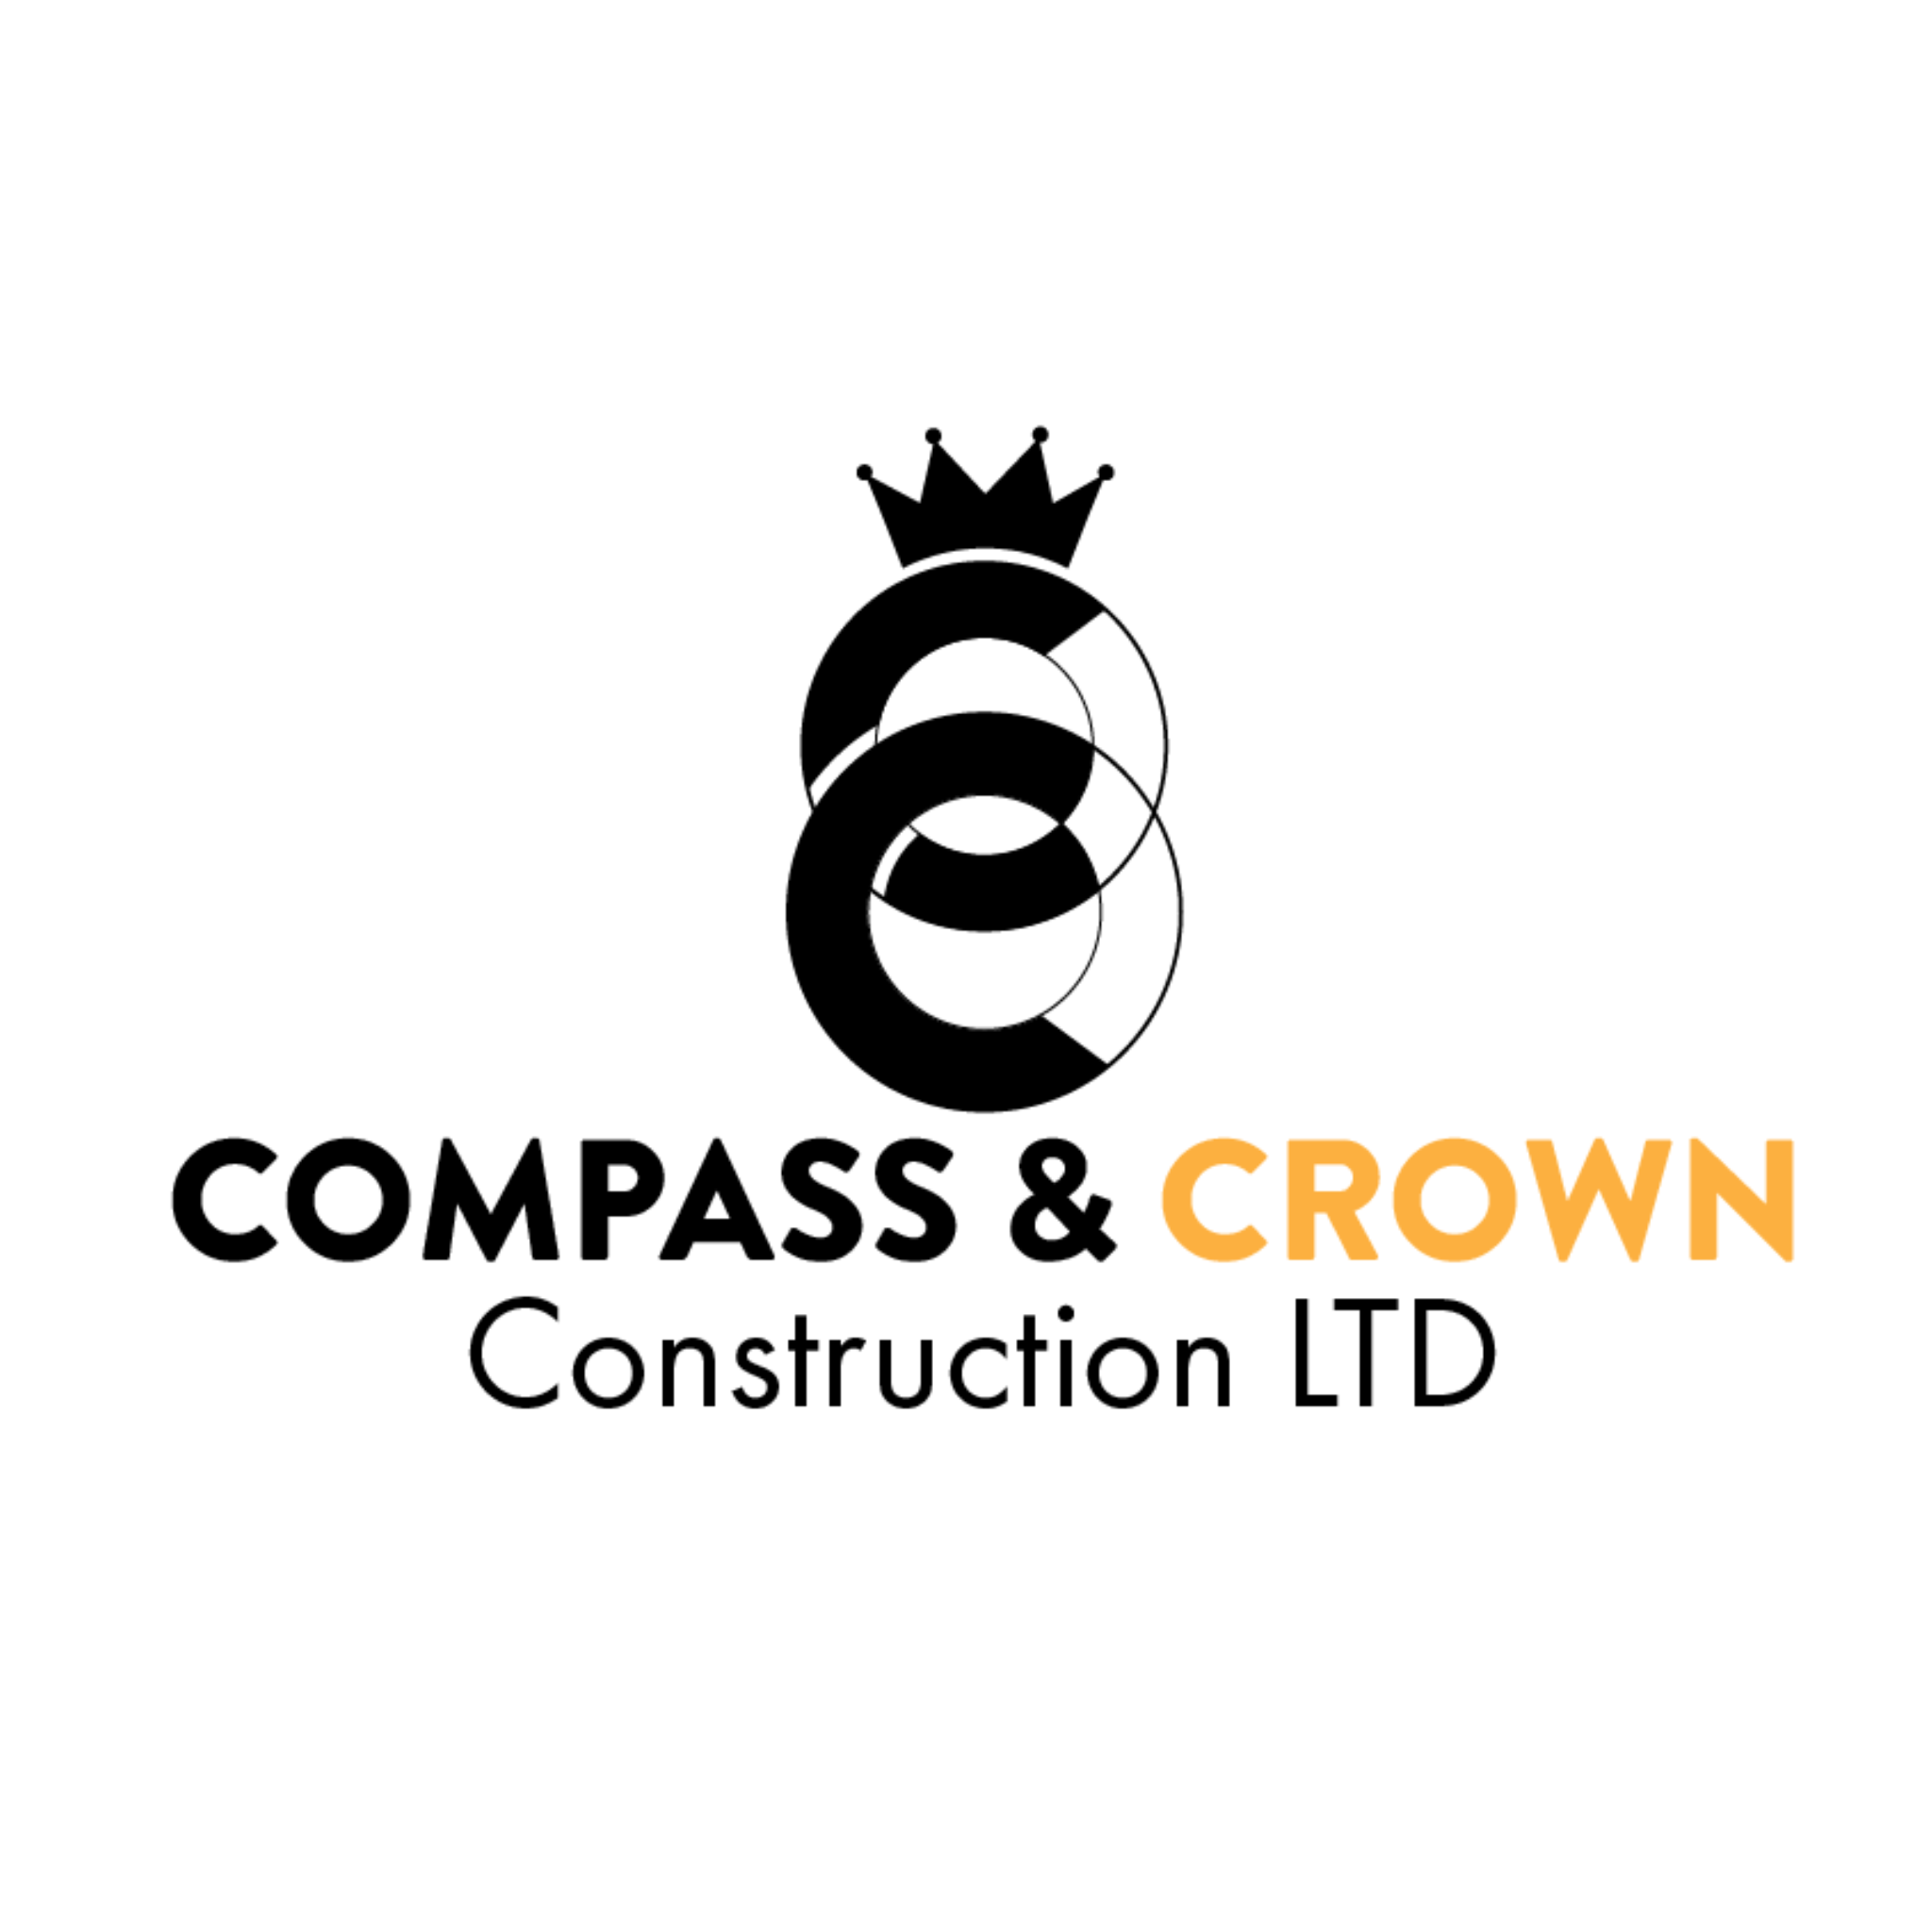 Compass Crown Construction Ltd.'s logo